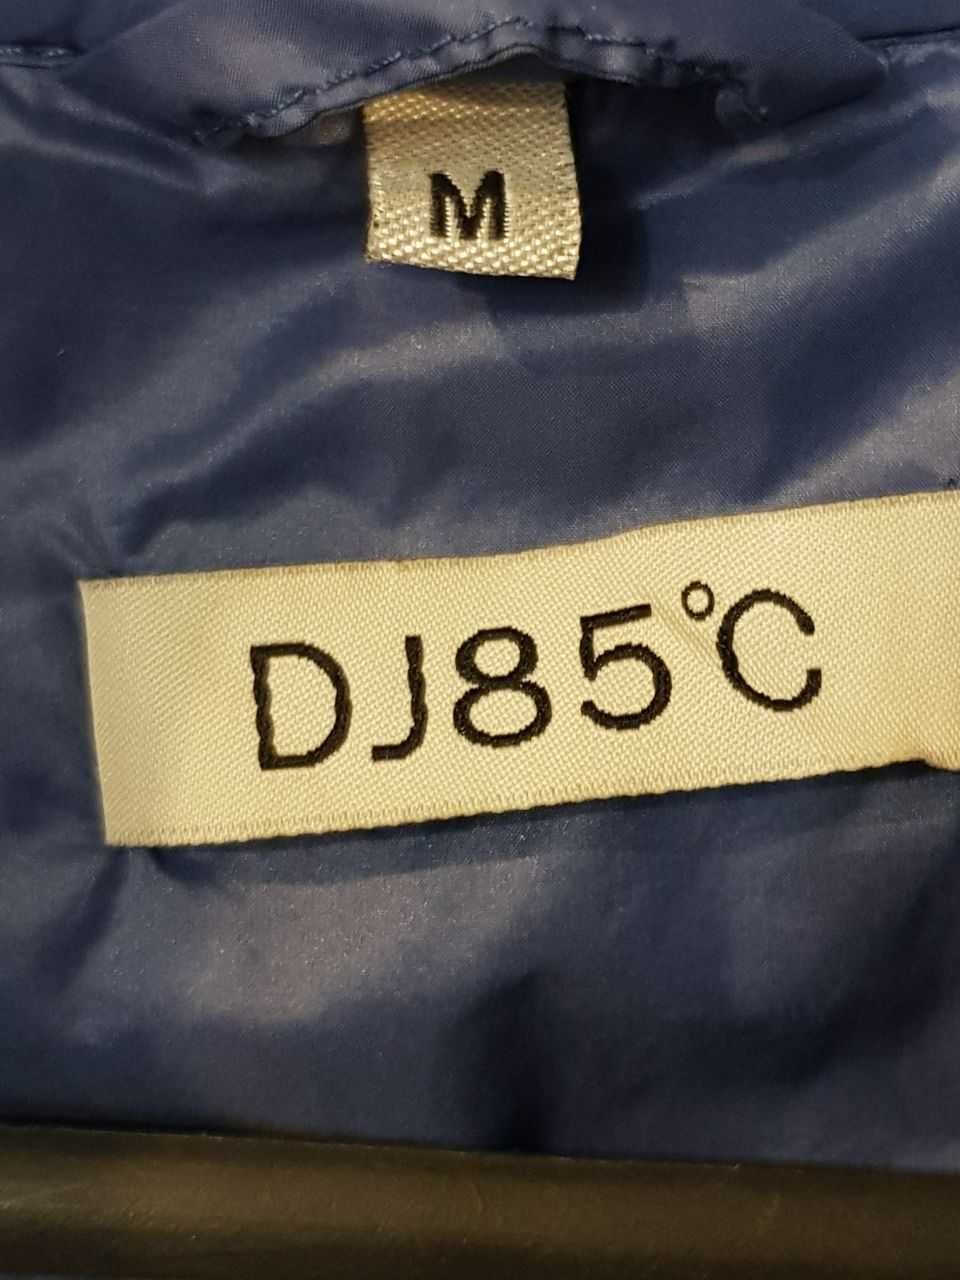 Женская куртка "DJ 85 C".